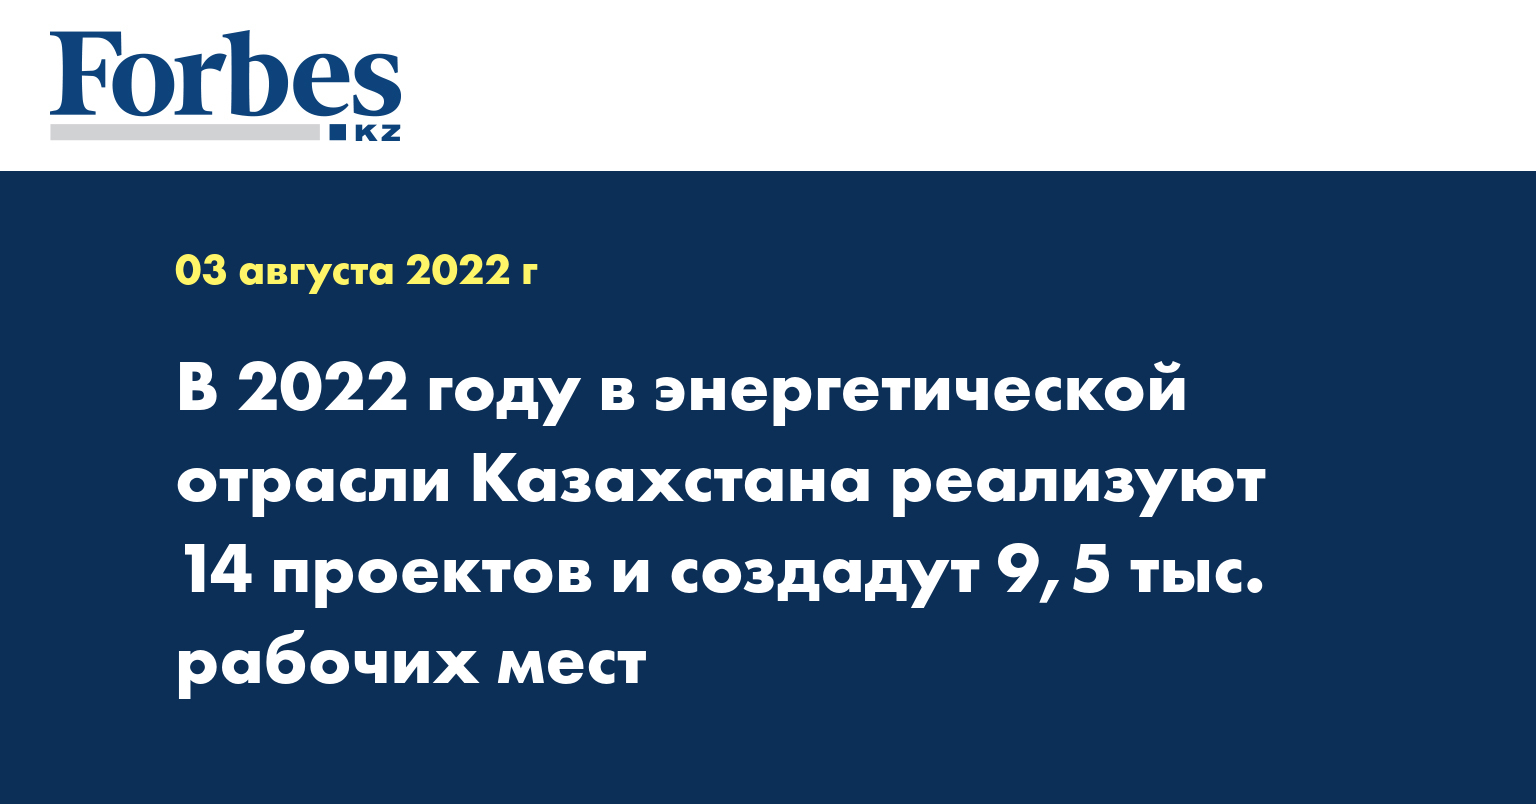 В 2022 году в энергетической отрасли Казахстана реализуют 14 проектов и создадут 9,5 тыс. рабочих мест